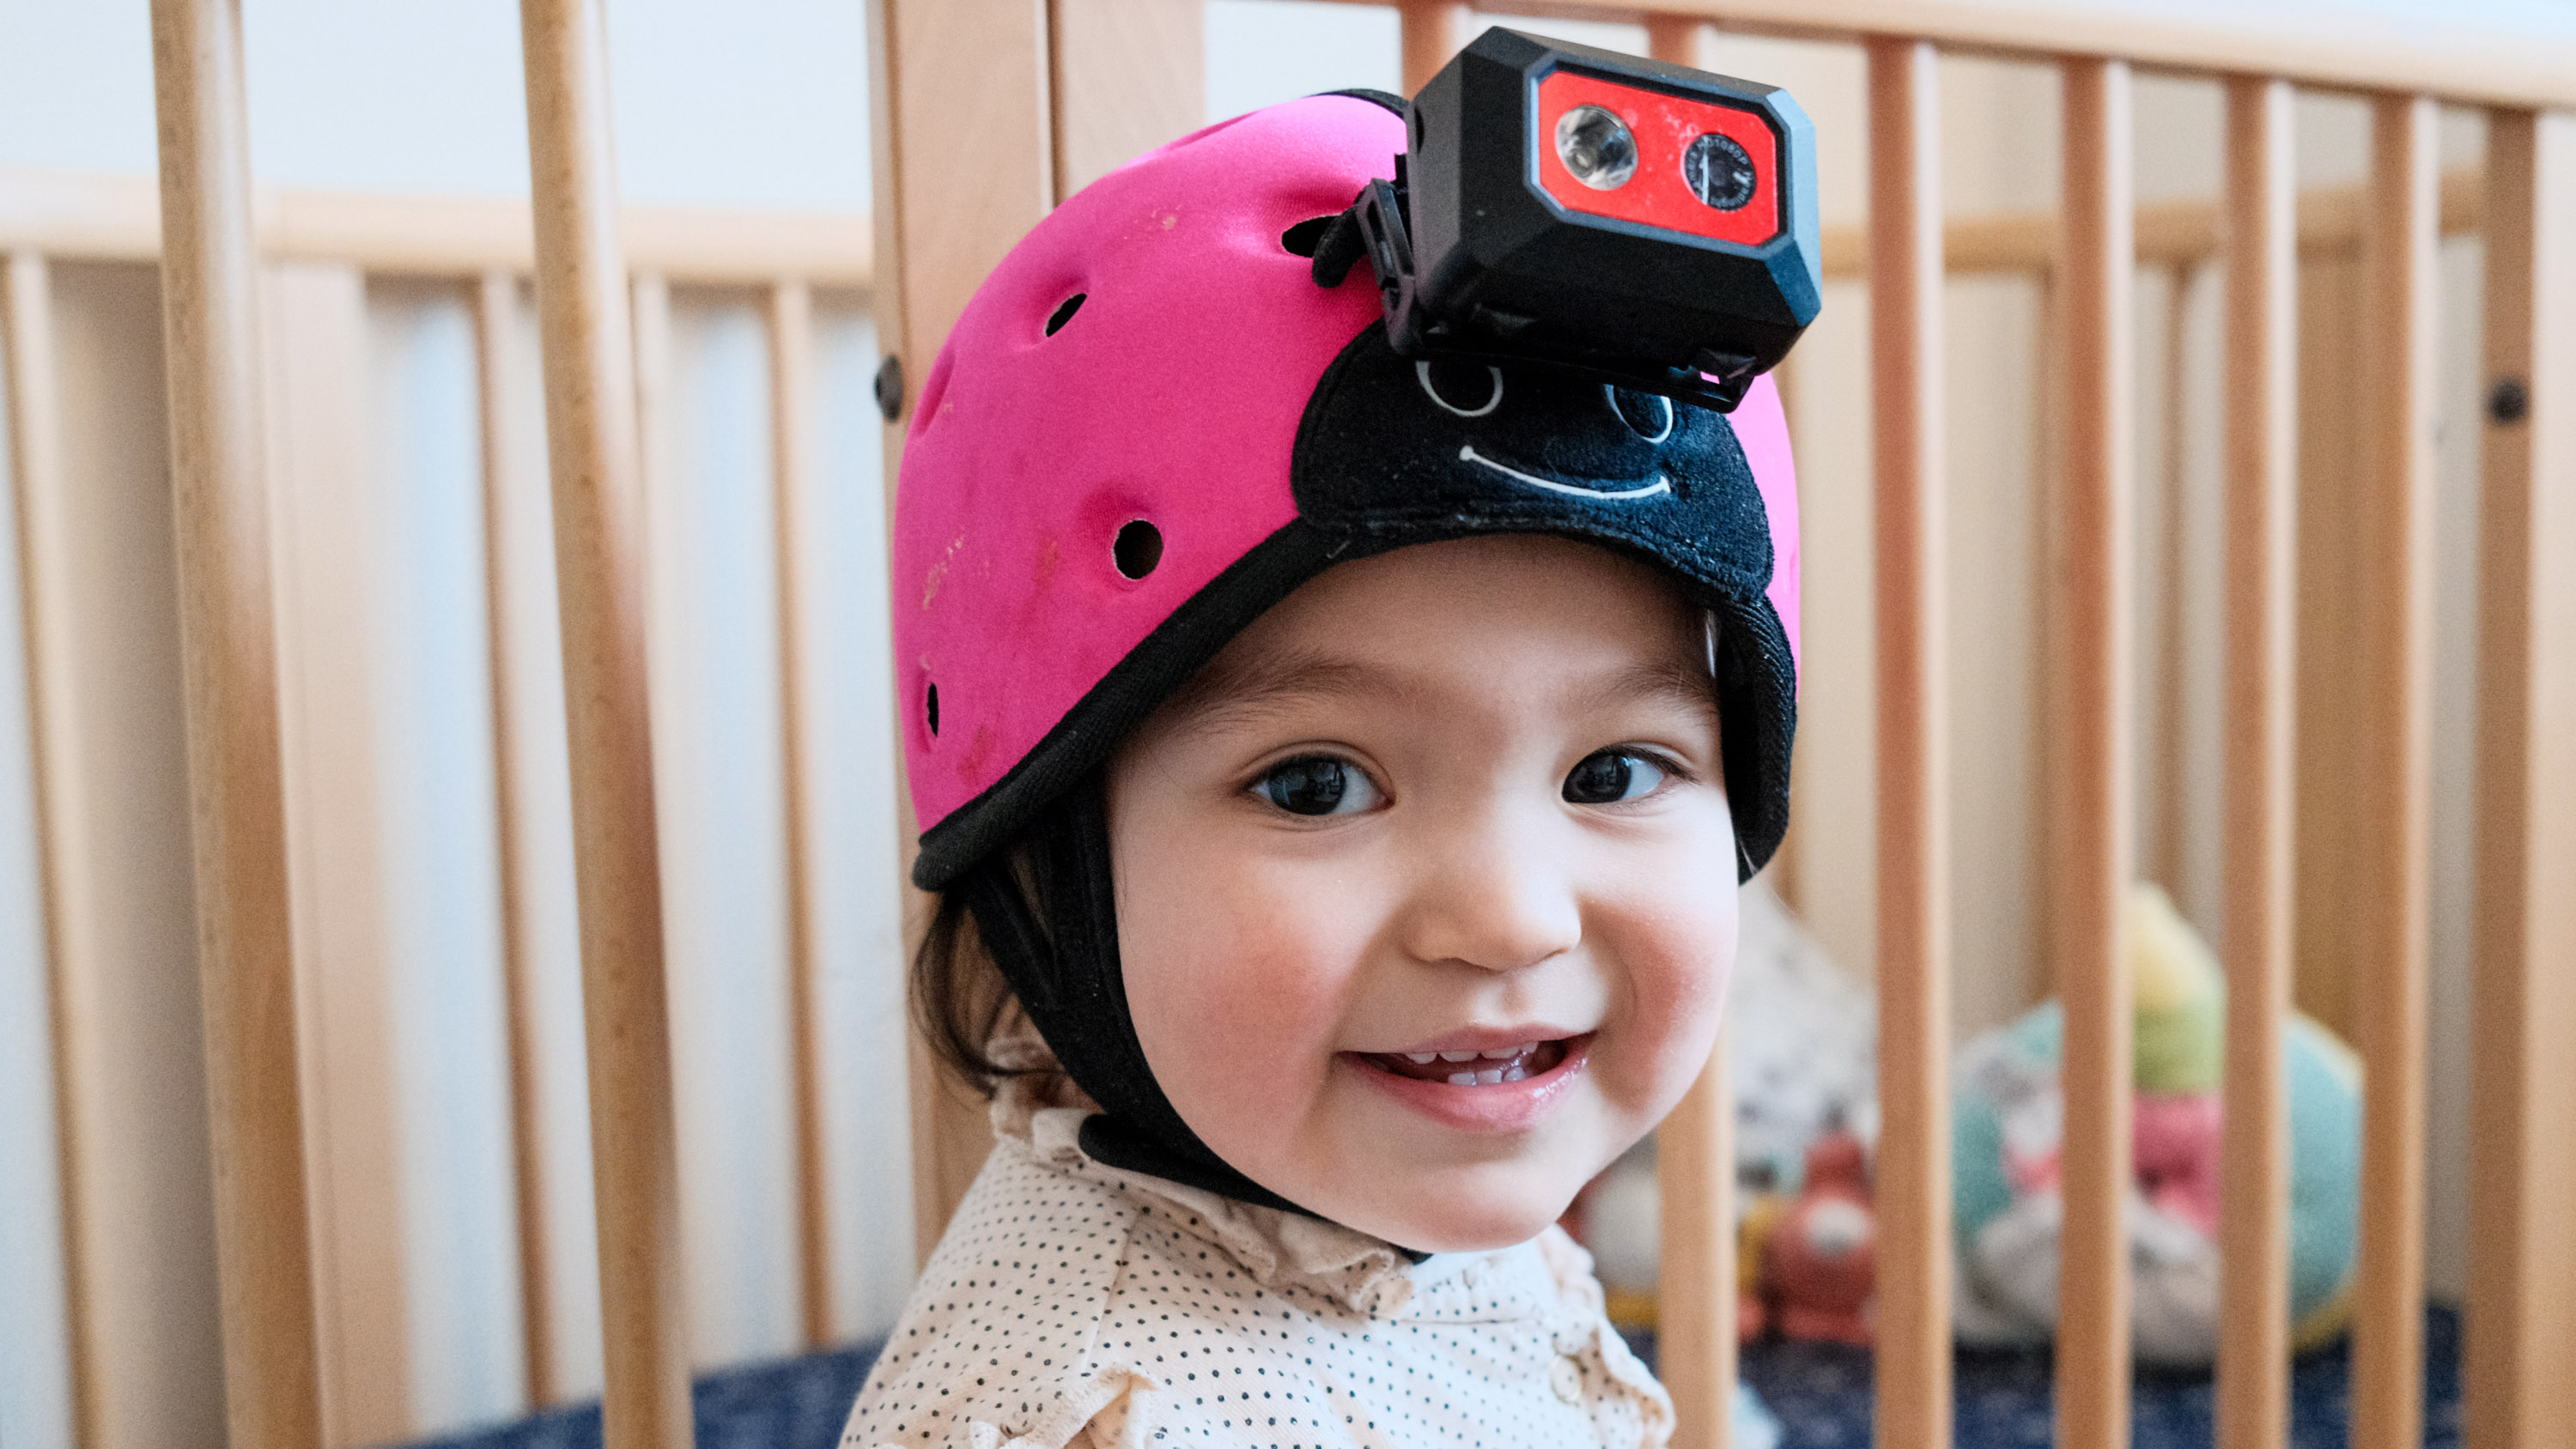 Nahaufnahme eines lächelnden Babys, das eine Headset-Kamera trägt, mit den Gitterstäben eines Kinderbetts im Hintergrund